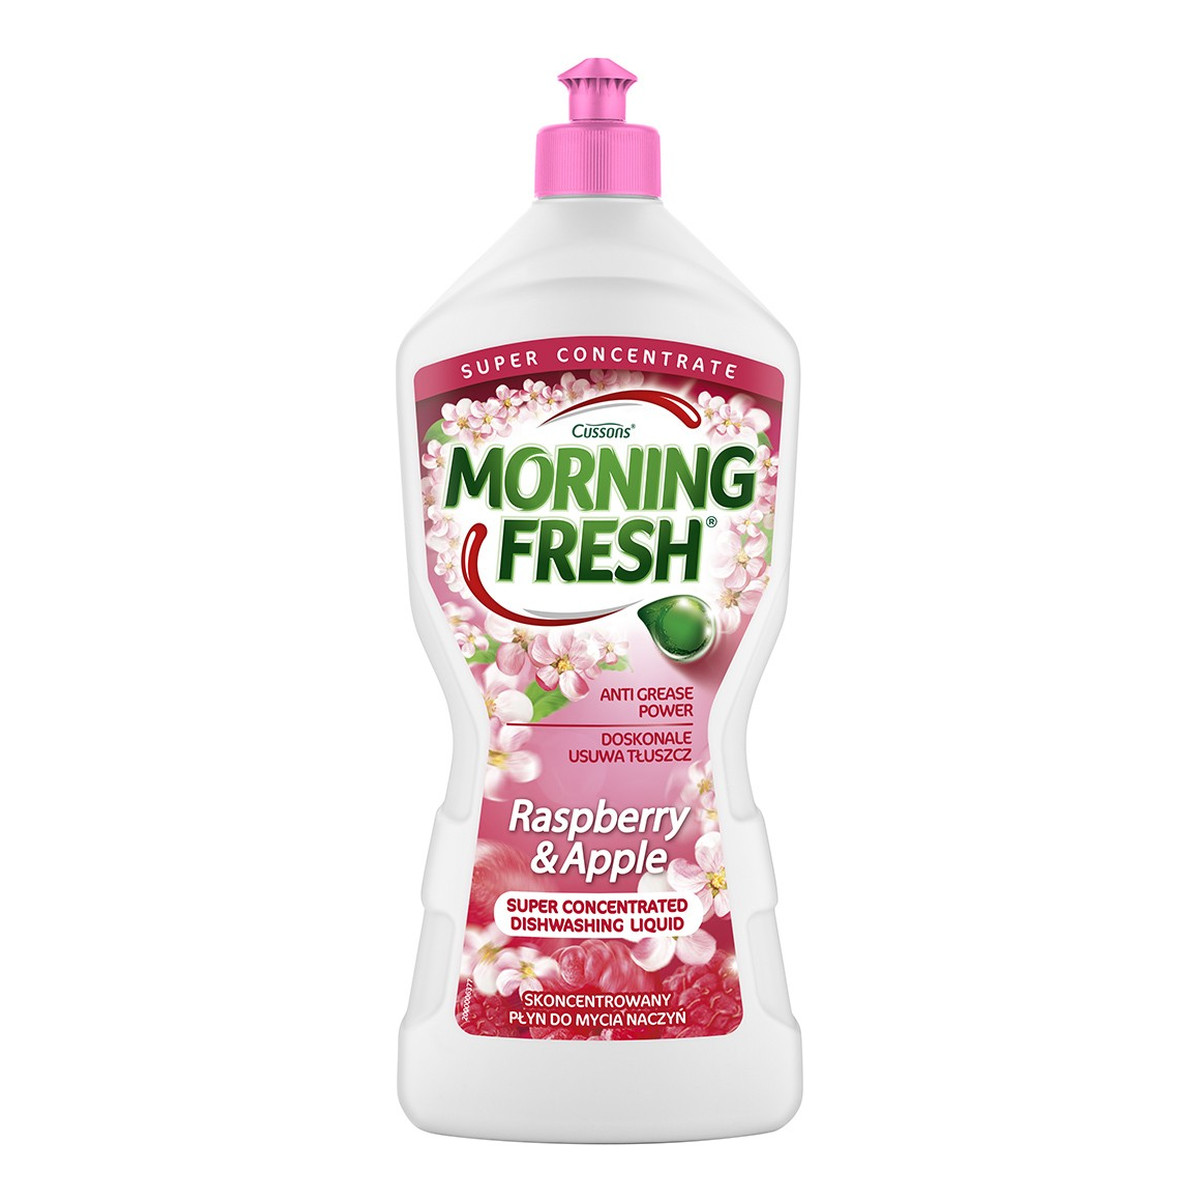 Morning Fresh Skoncentrowany Płyn do mycia naczyń Raspbery & Apple 900ml